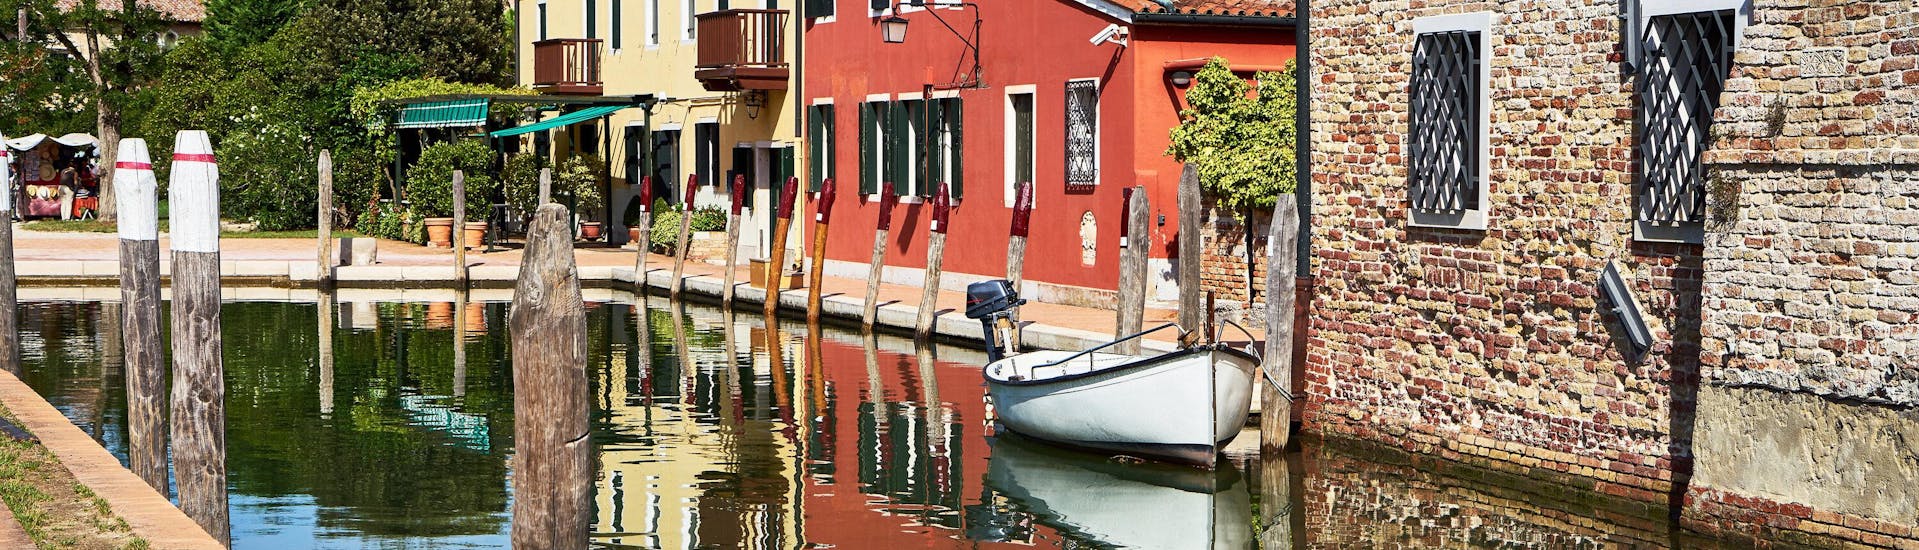 Una barca nel canale durante una gita in barca a Torcello.